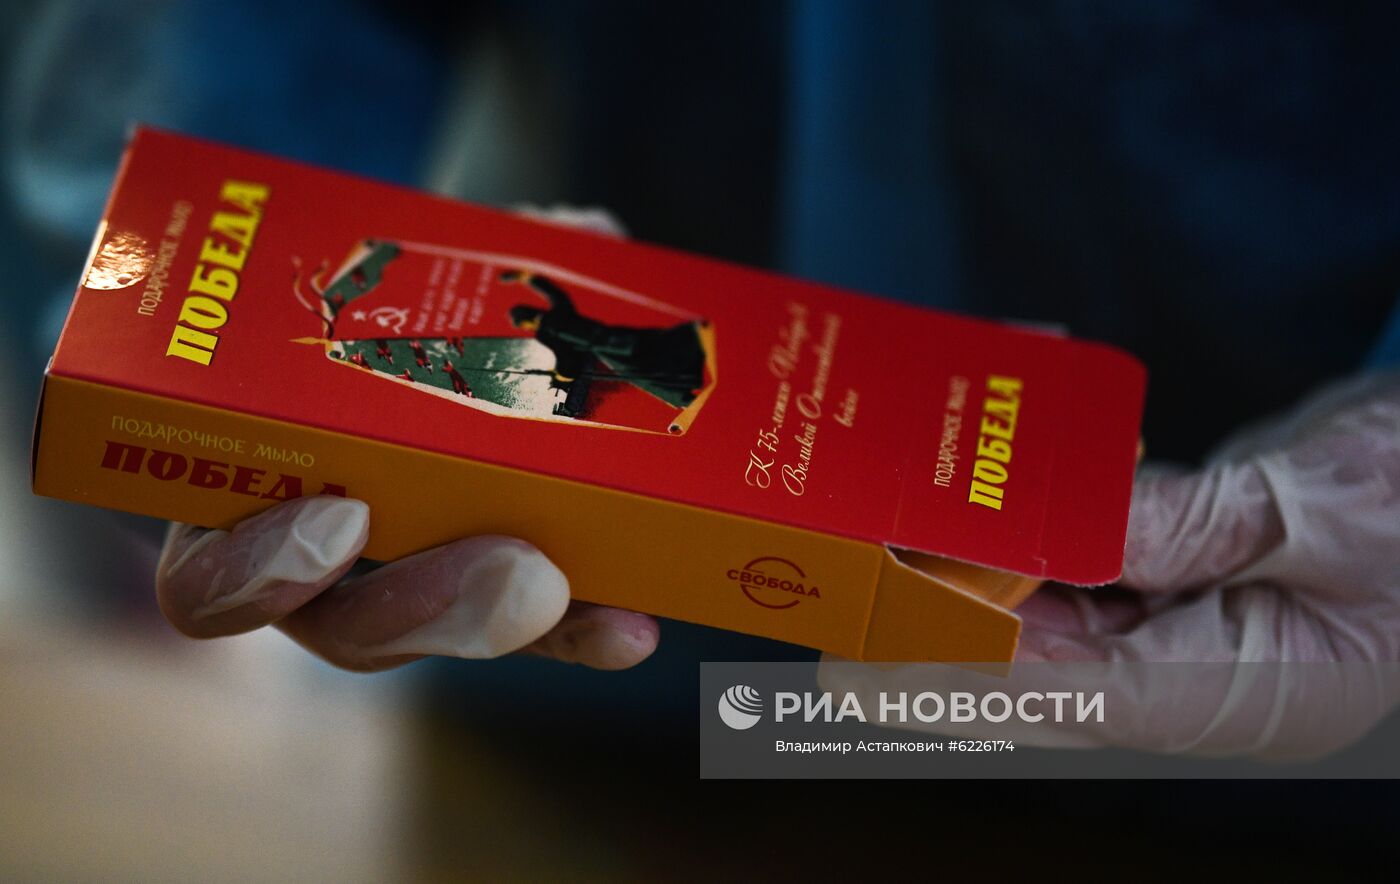 Фабрика "Свобода" начала выпуск подарочных наборов к 75-летию Победы 